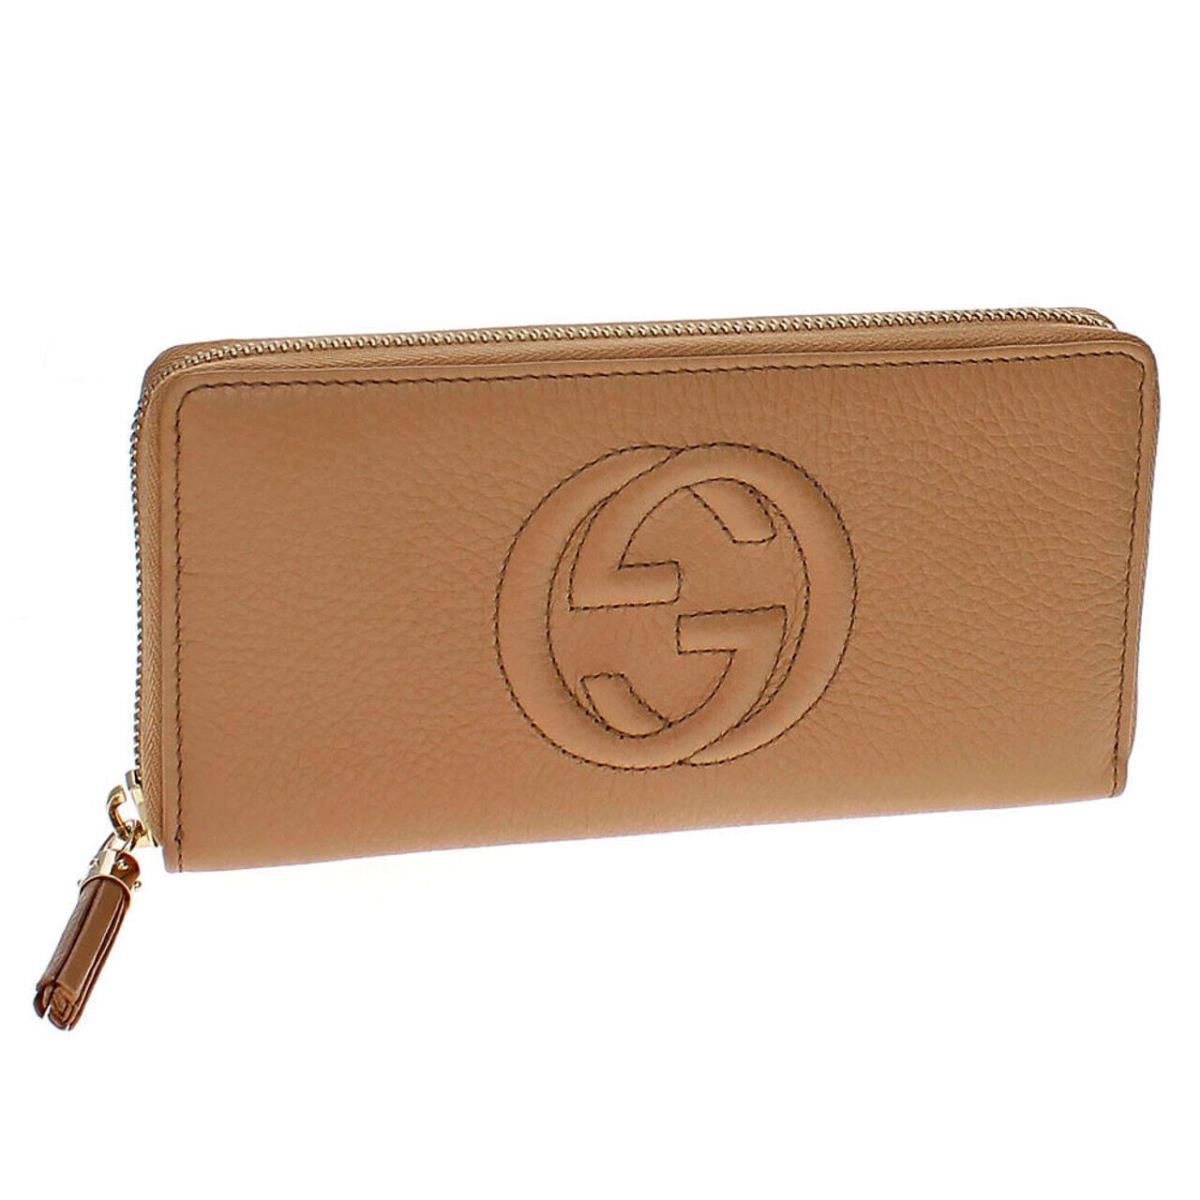 Gucci Soho Zip Beige Leather Women`s Wallet 598187 A7M0G 2754